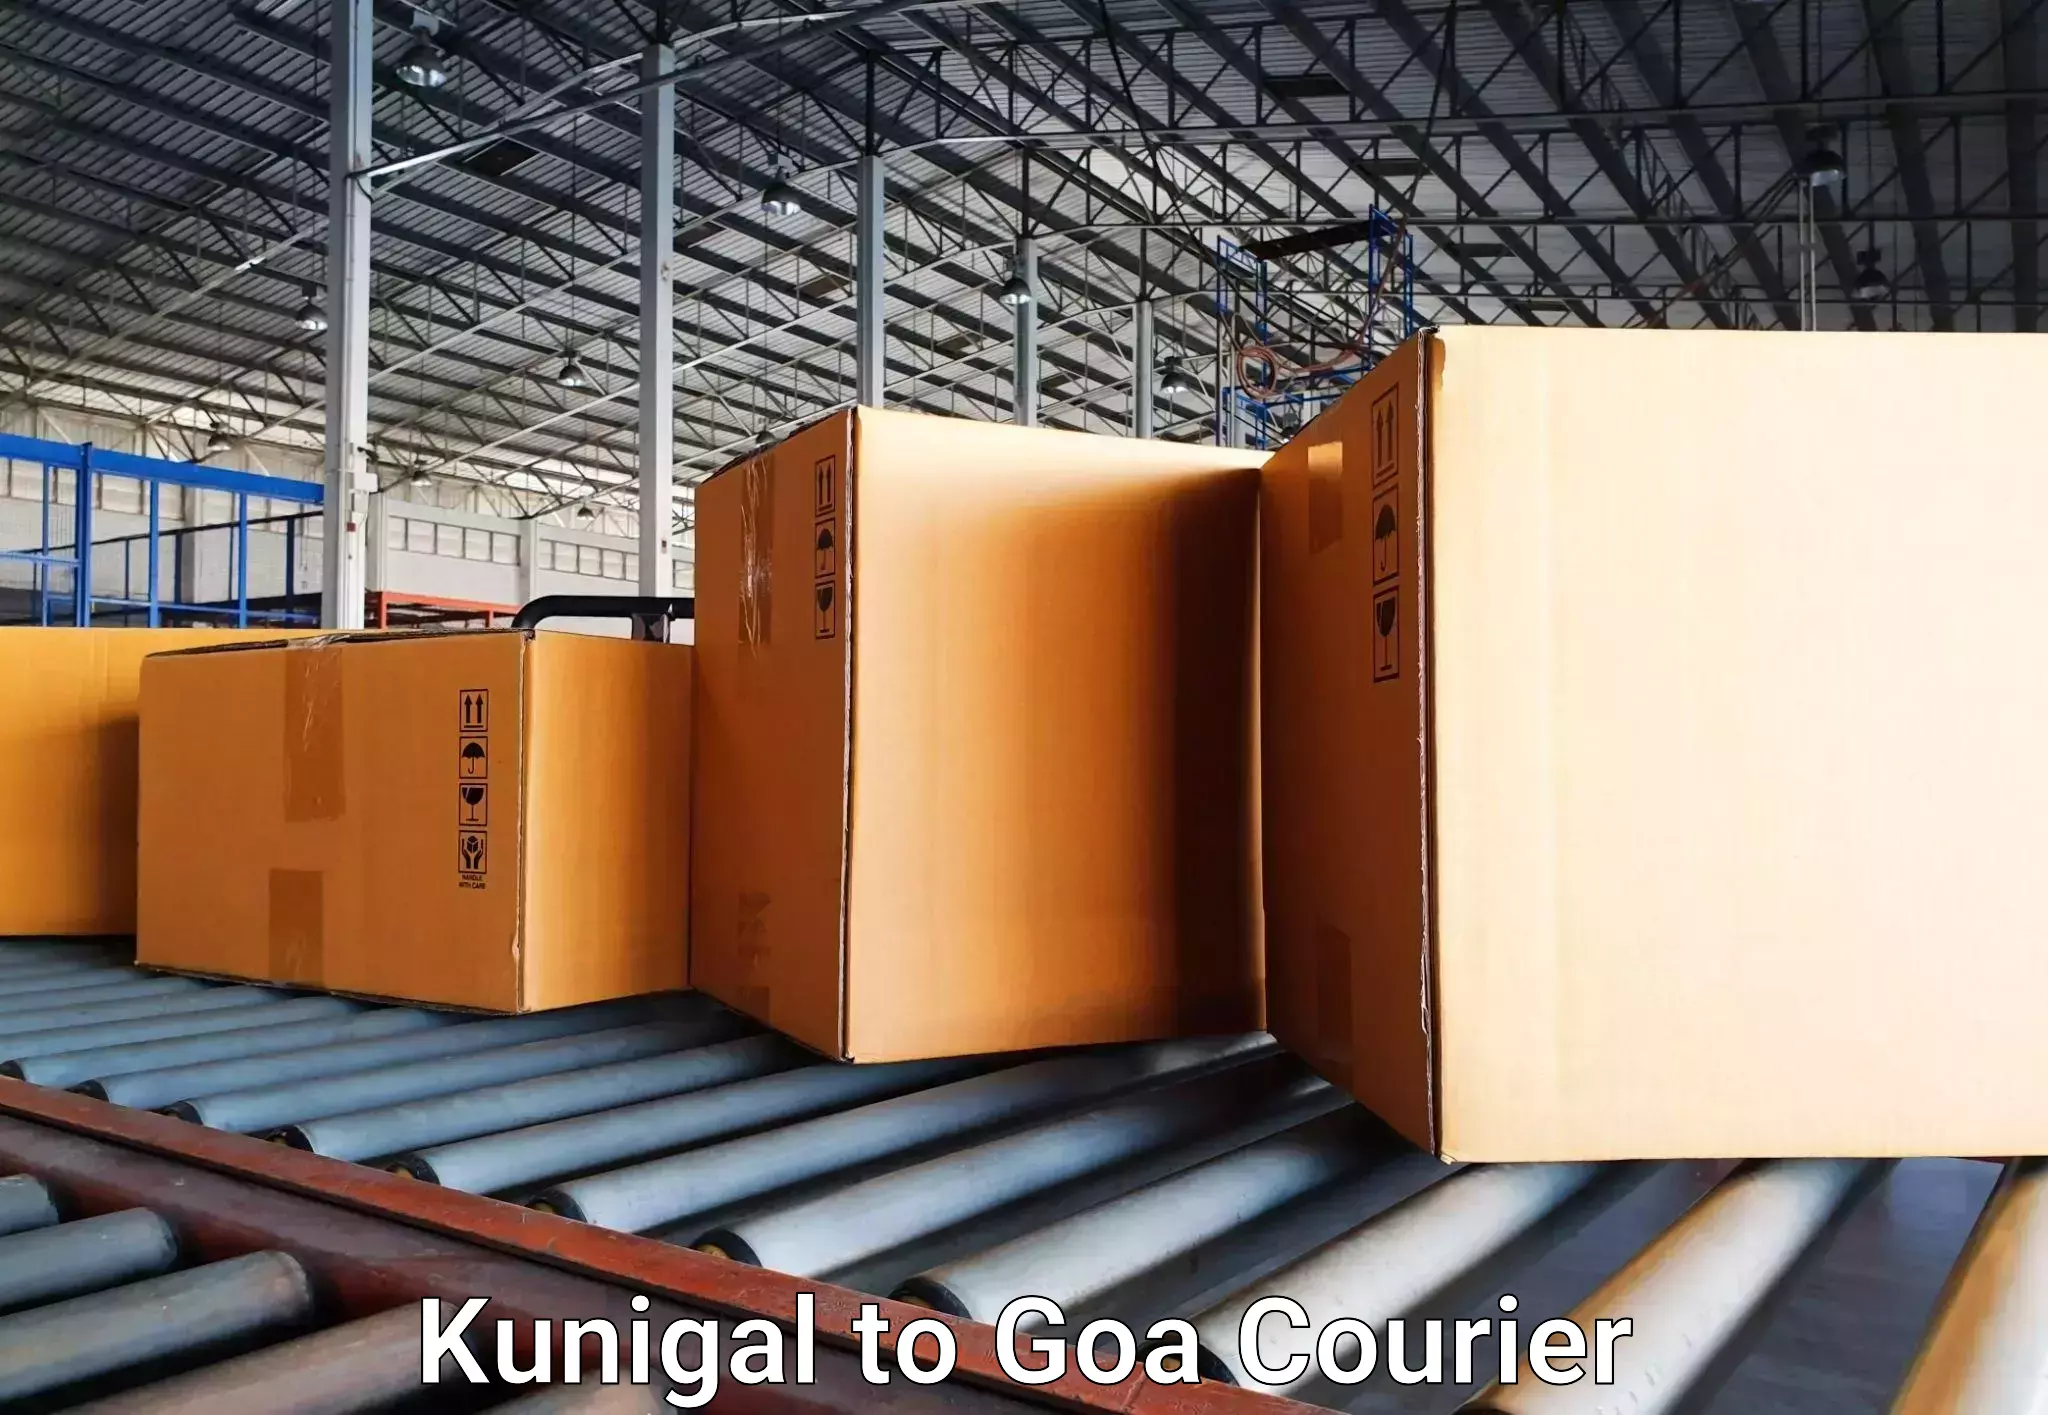 Baggage transport technology Kunigal to Panjim